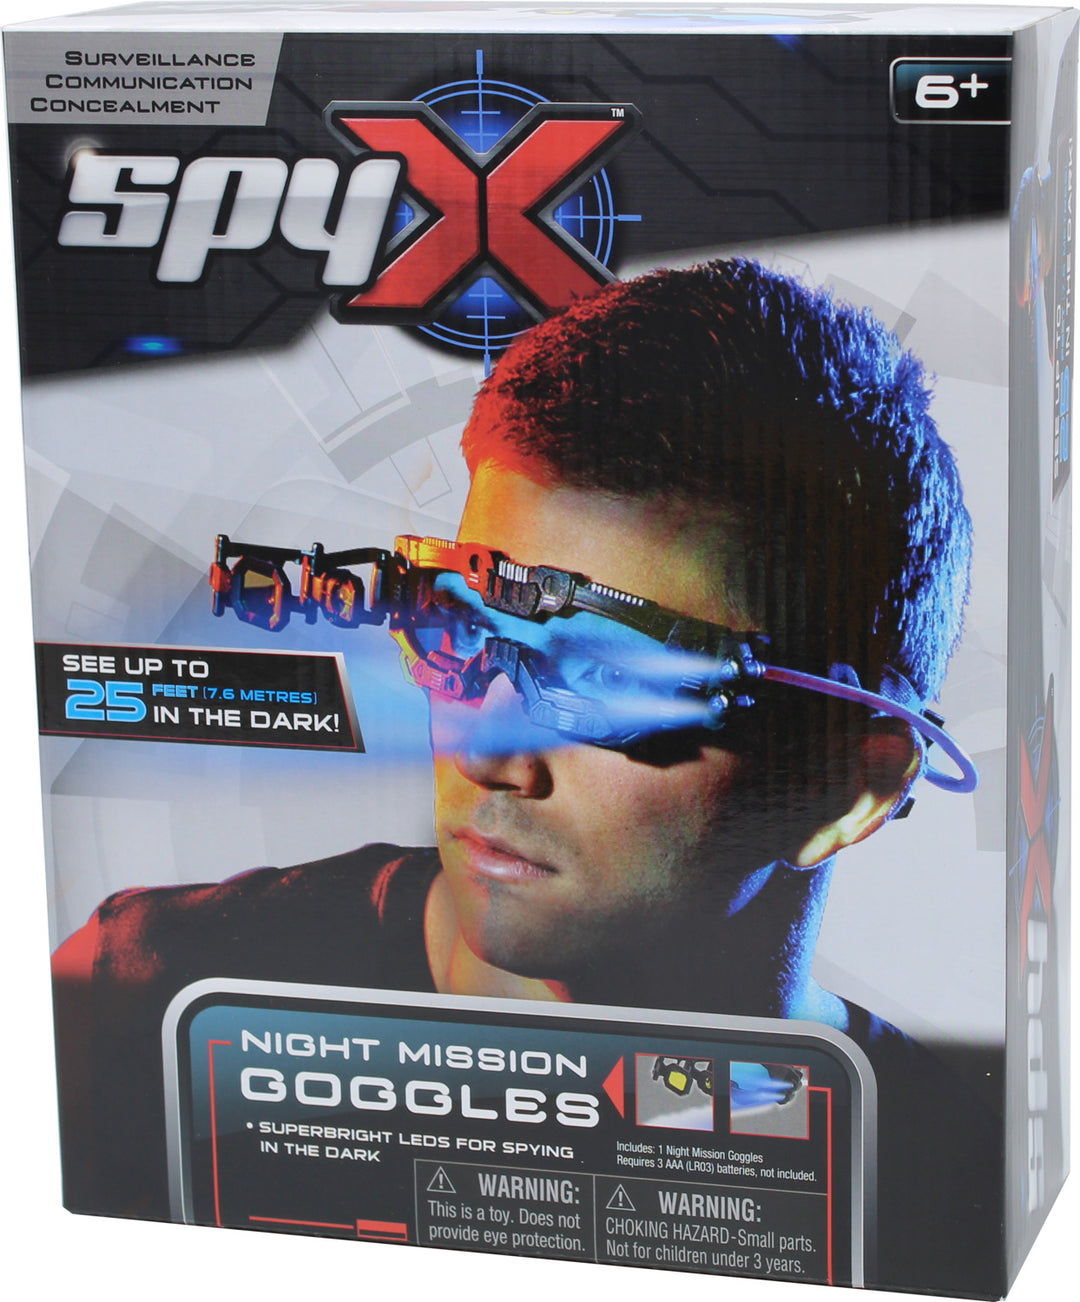 Night Mission Goggles 10 x 12 box